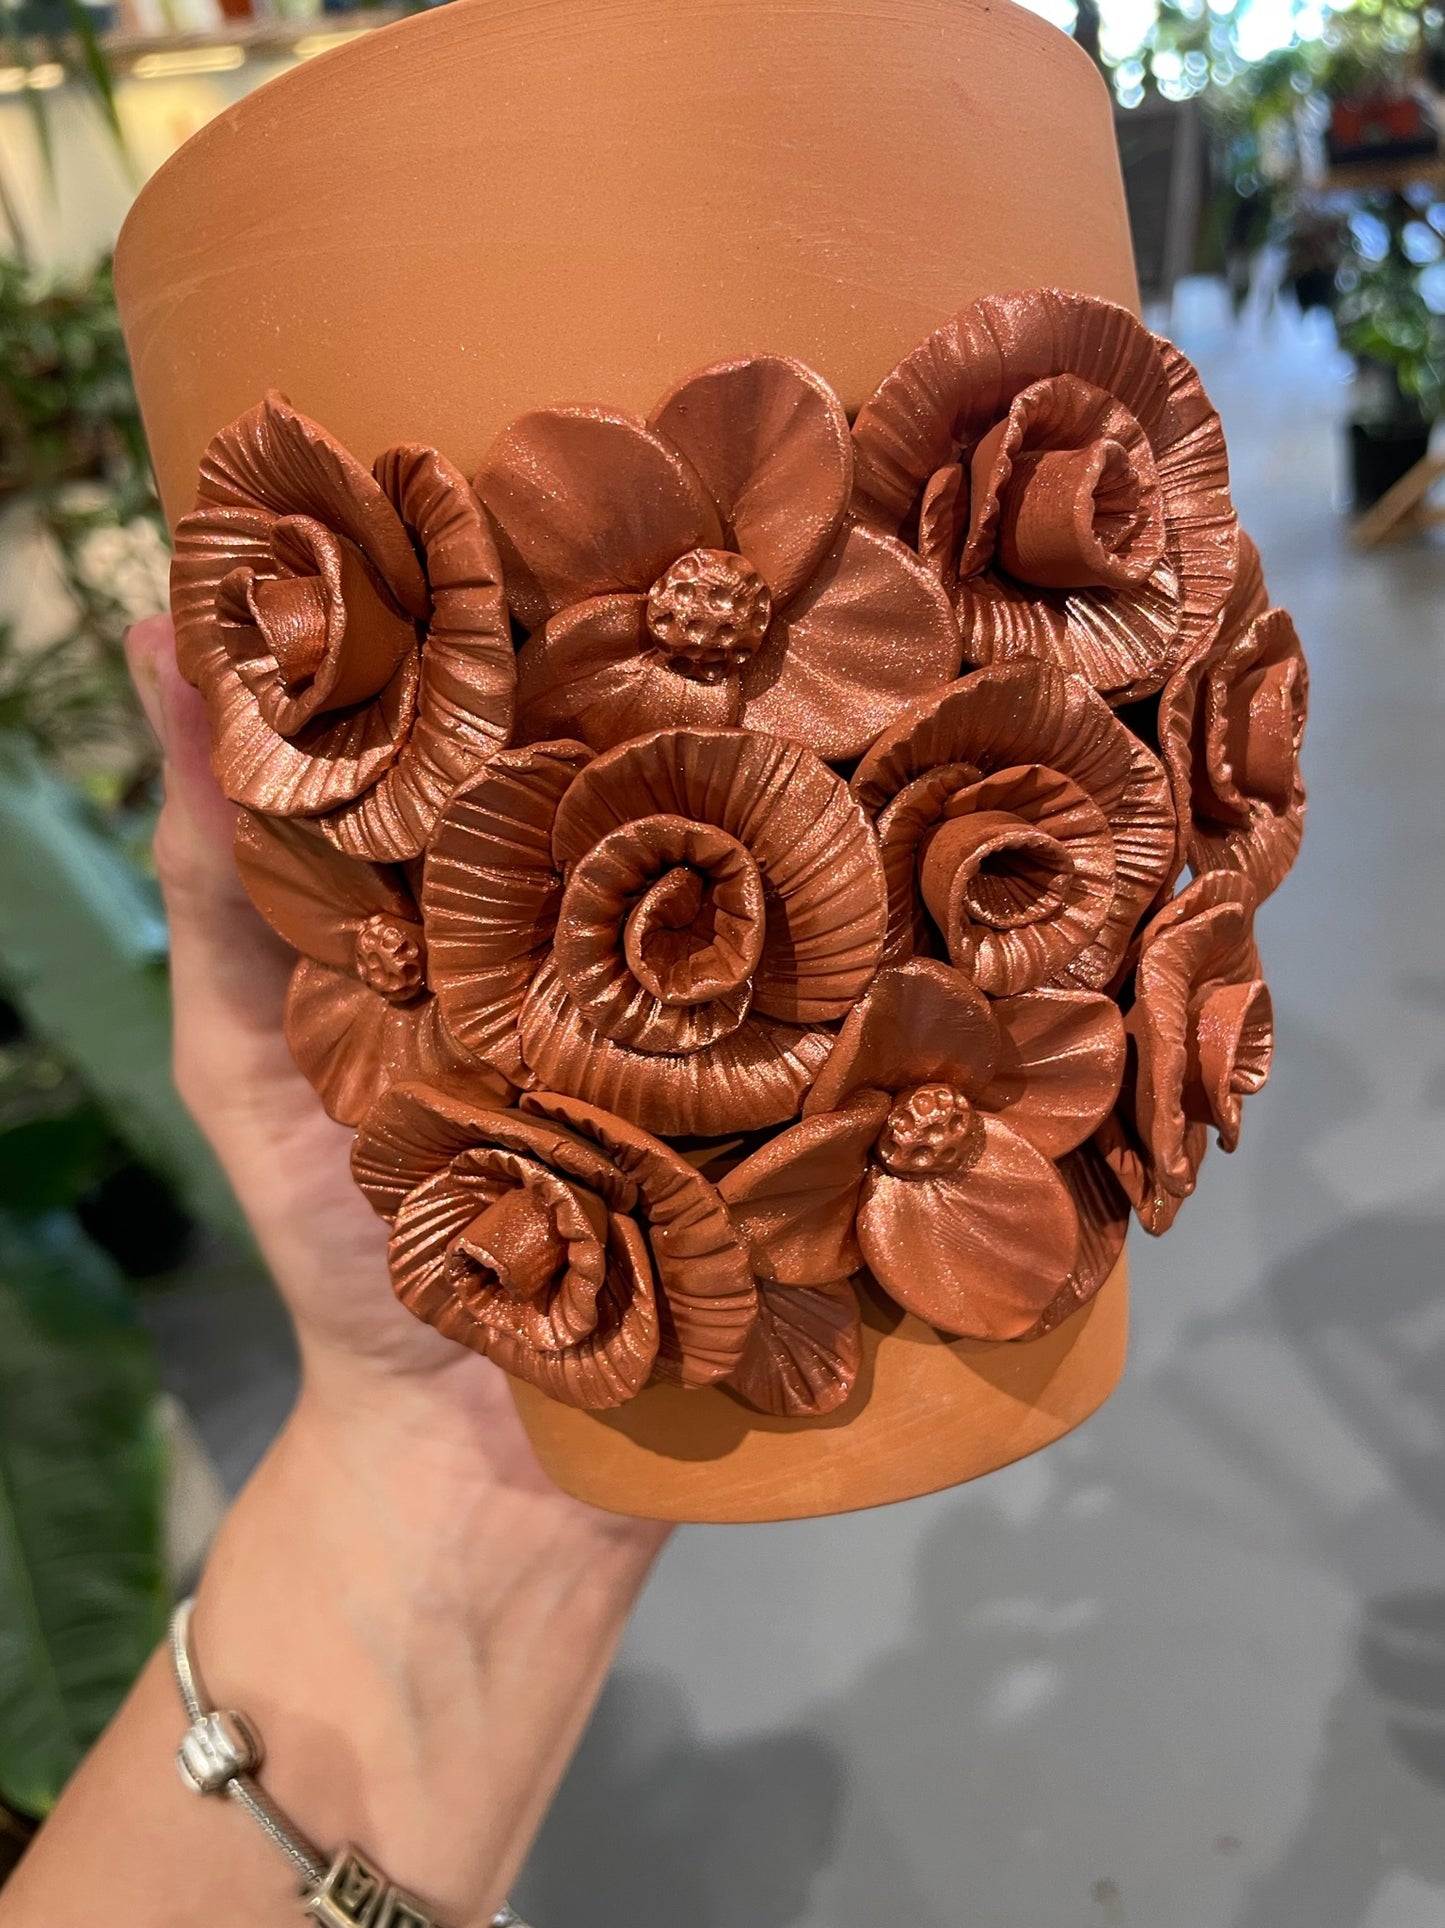 Custom Floral Pots